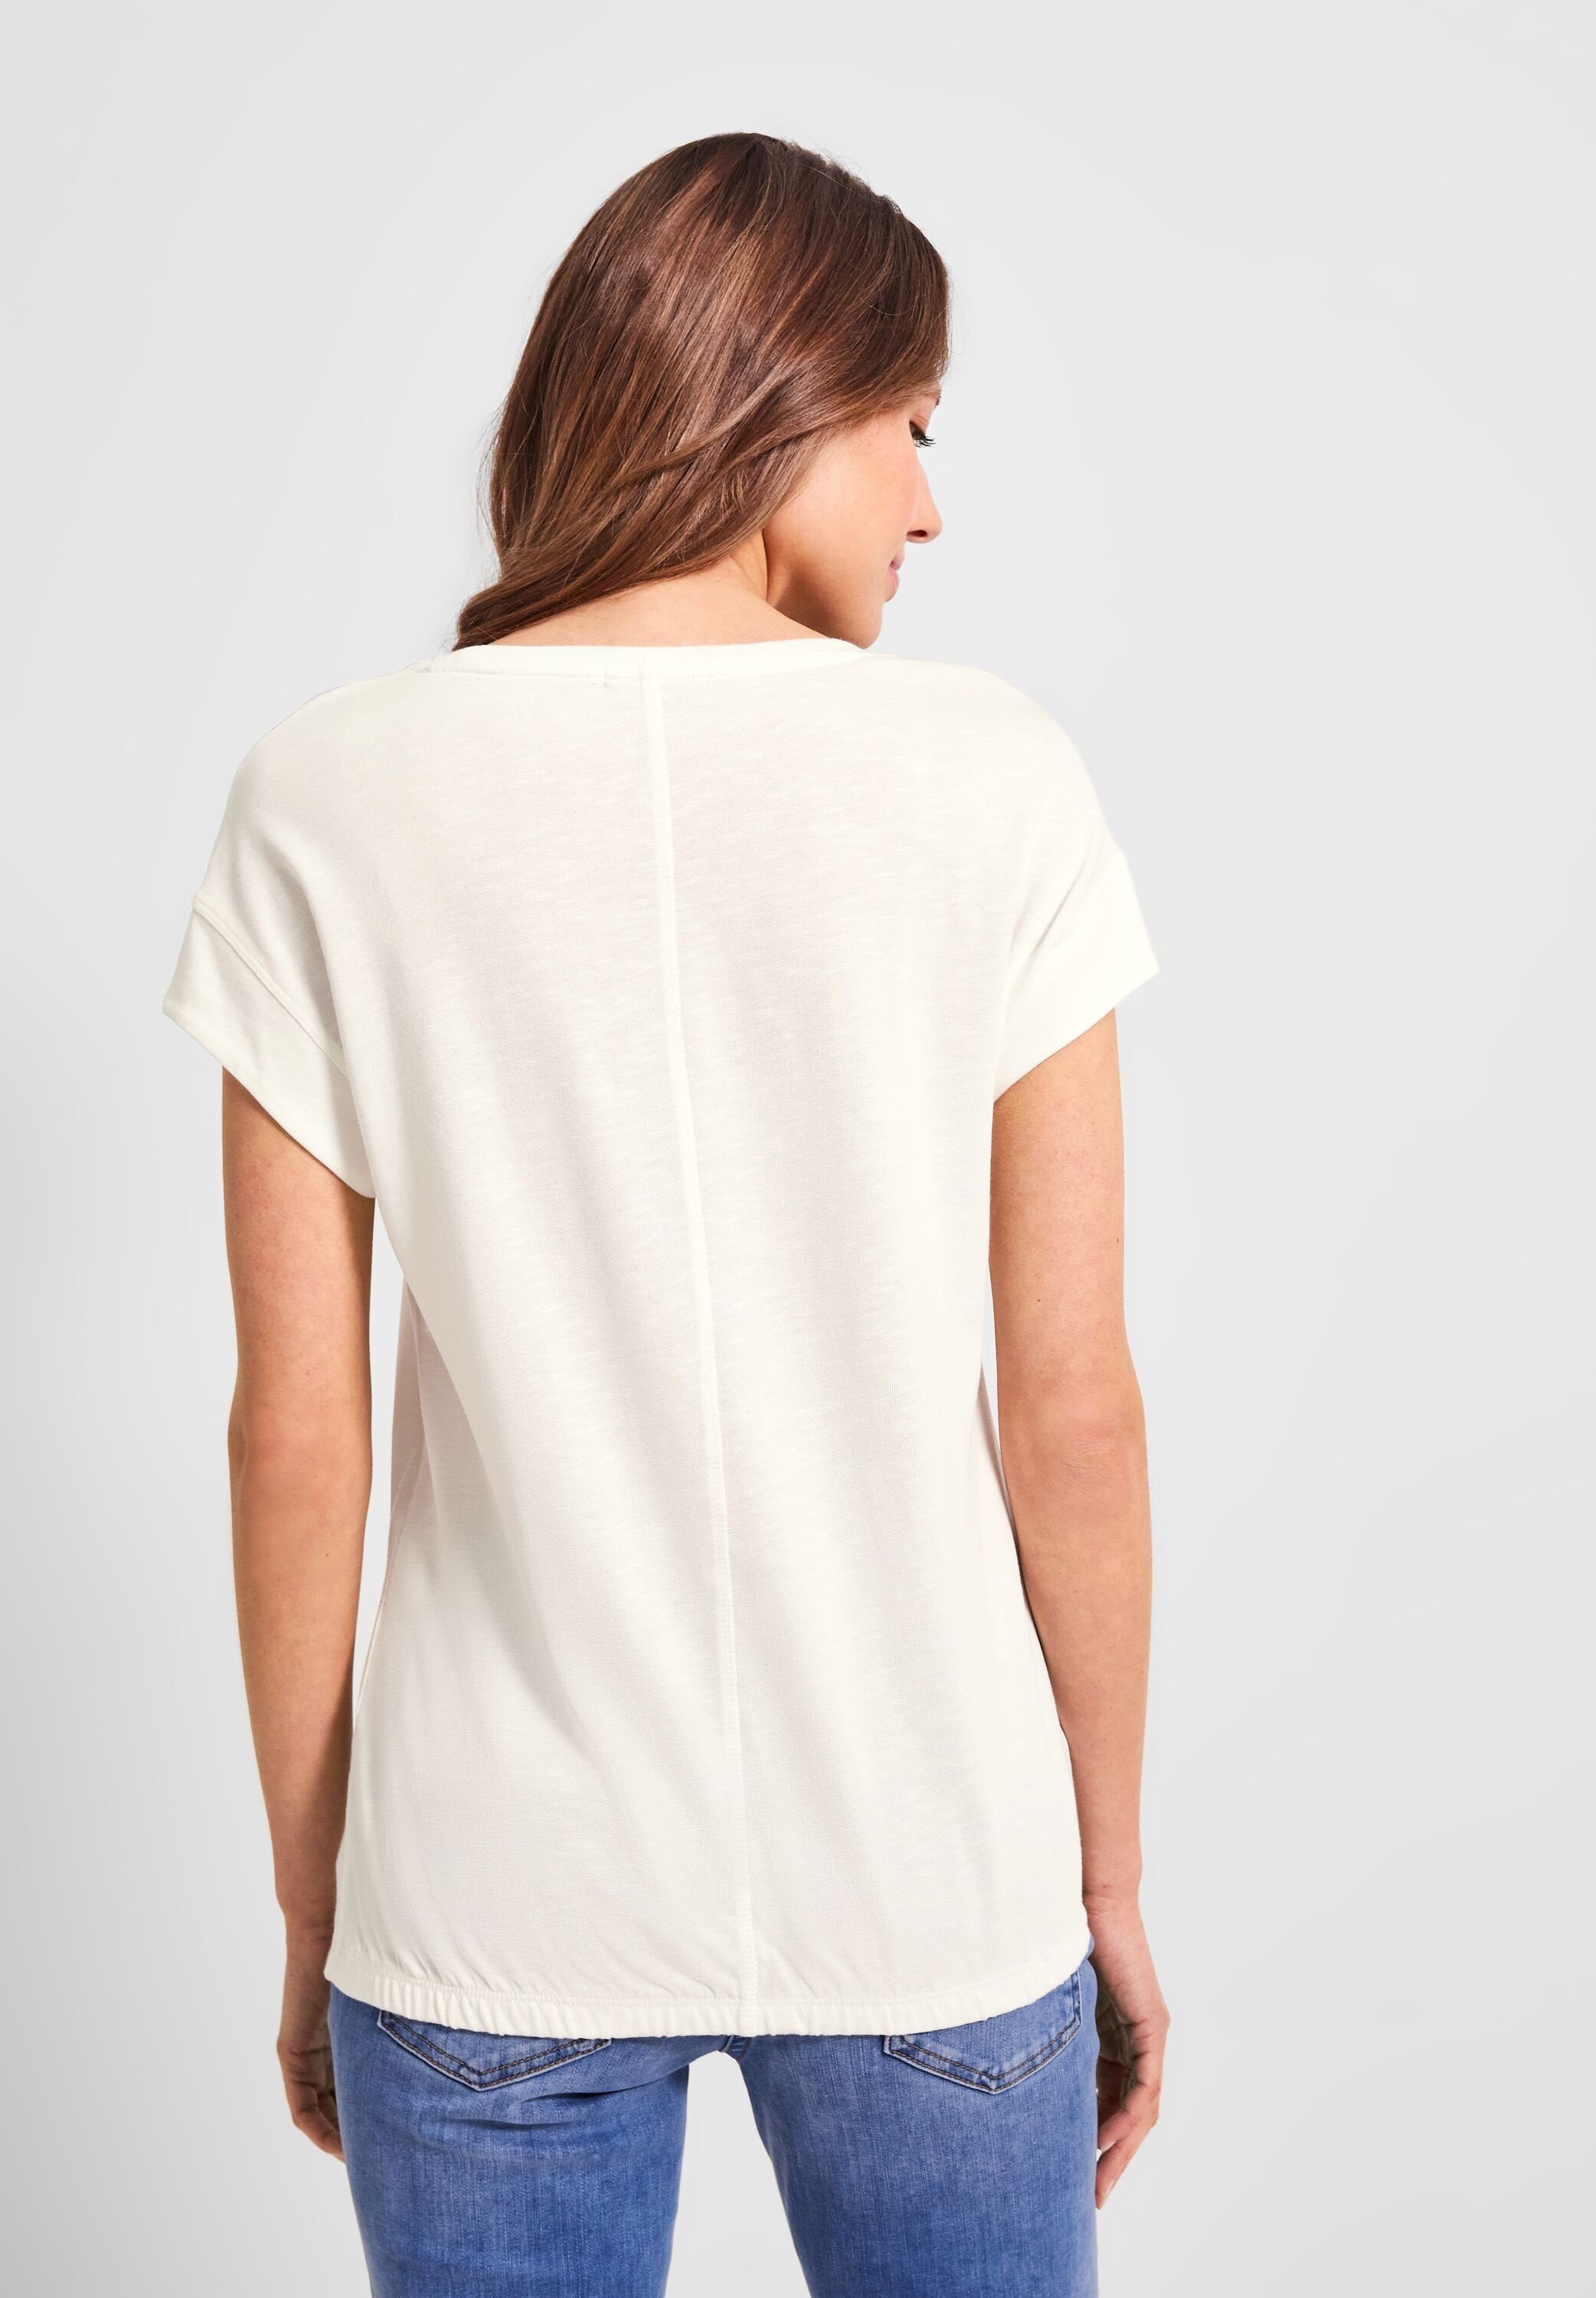 Fotoprint Cecil T-Shirt mit vanilla T-Shirt white